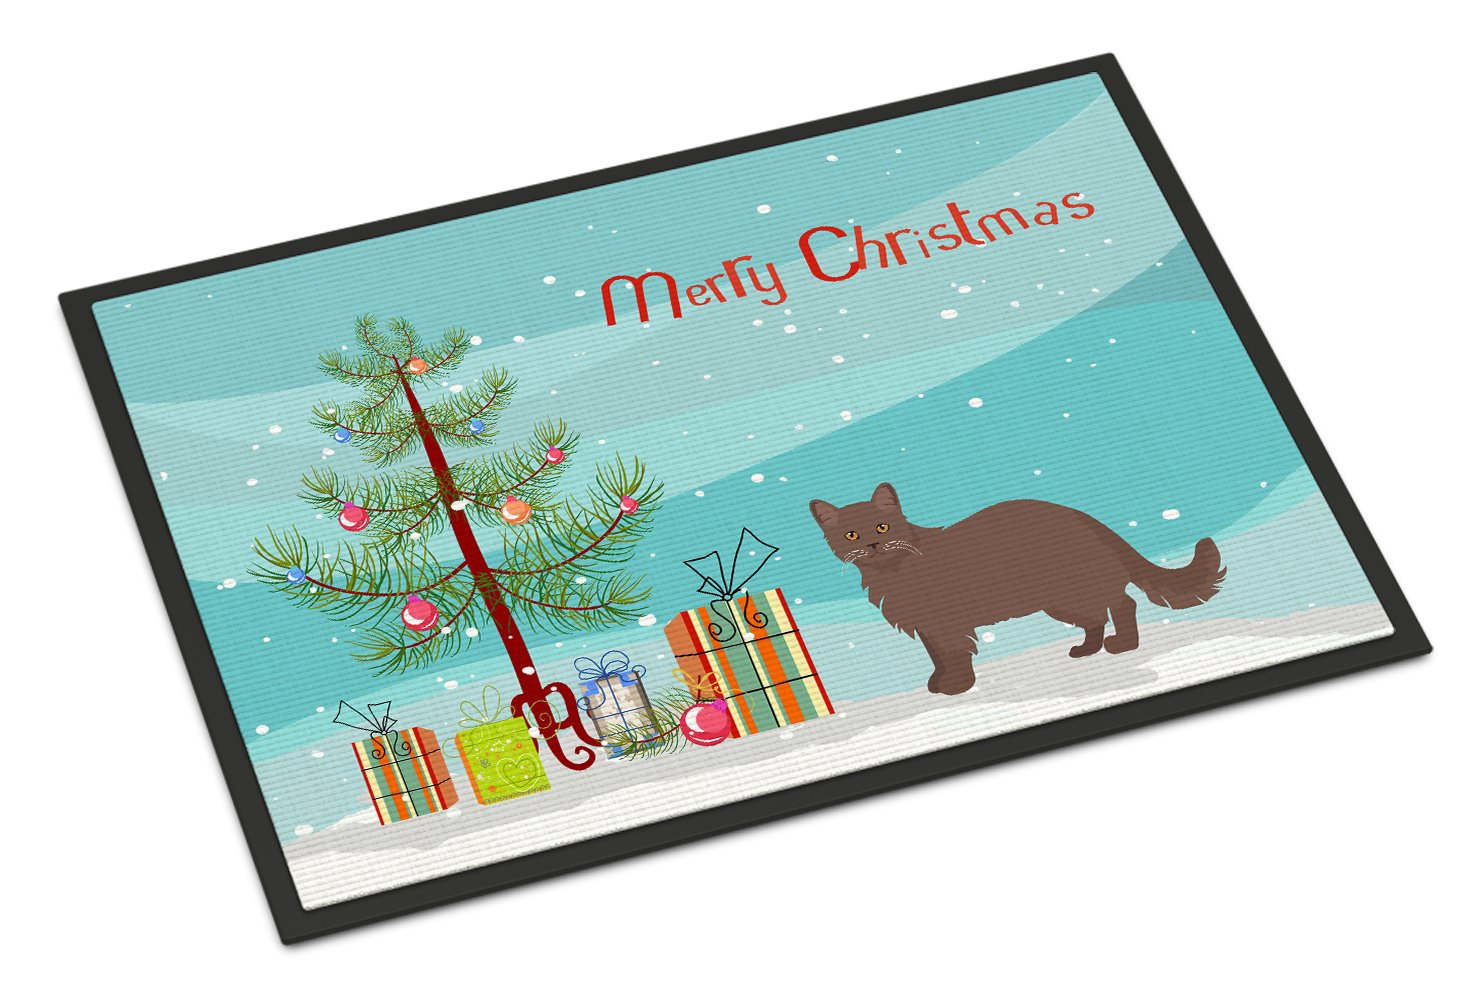 York Chocolate #1 Cat Merry Christmas Indoor or Outdoor Mat 24x36 CK4737JMAT by Caroline's Treasures